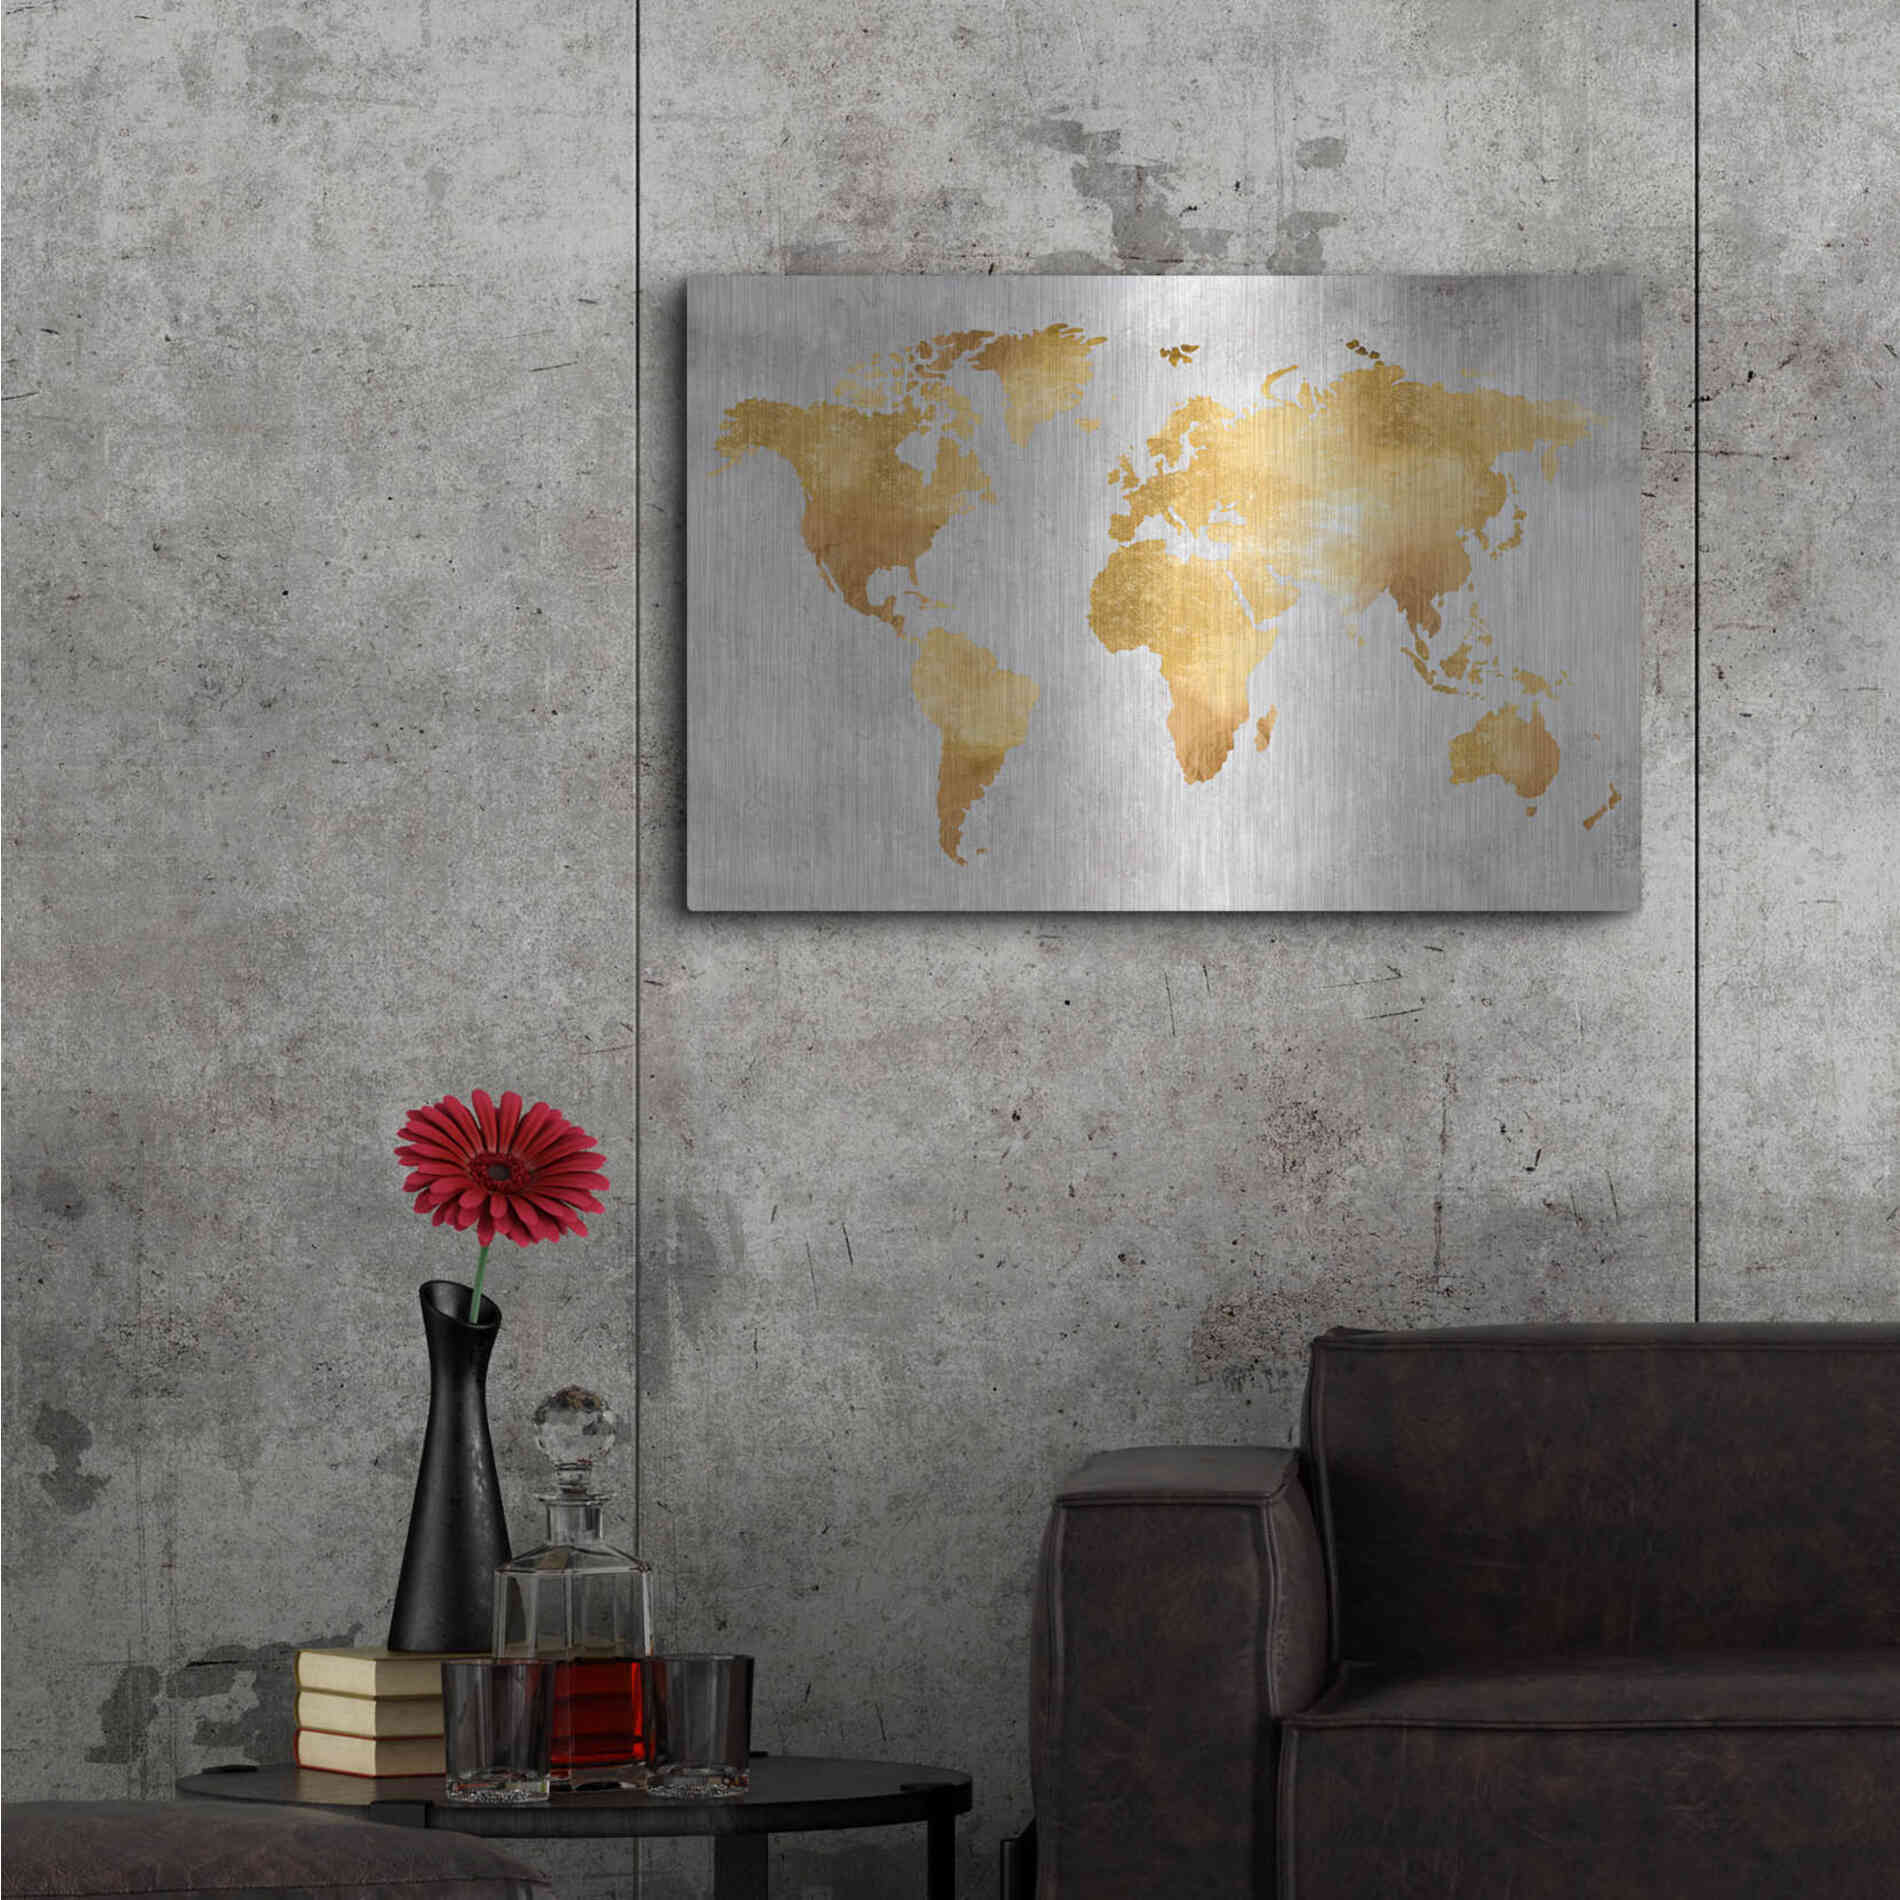 Luxe Metal Art 'Gold World' by Design Fabrikken, Metal Wall Art,36x24